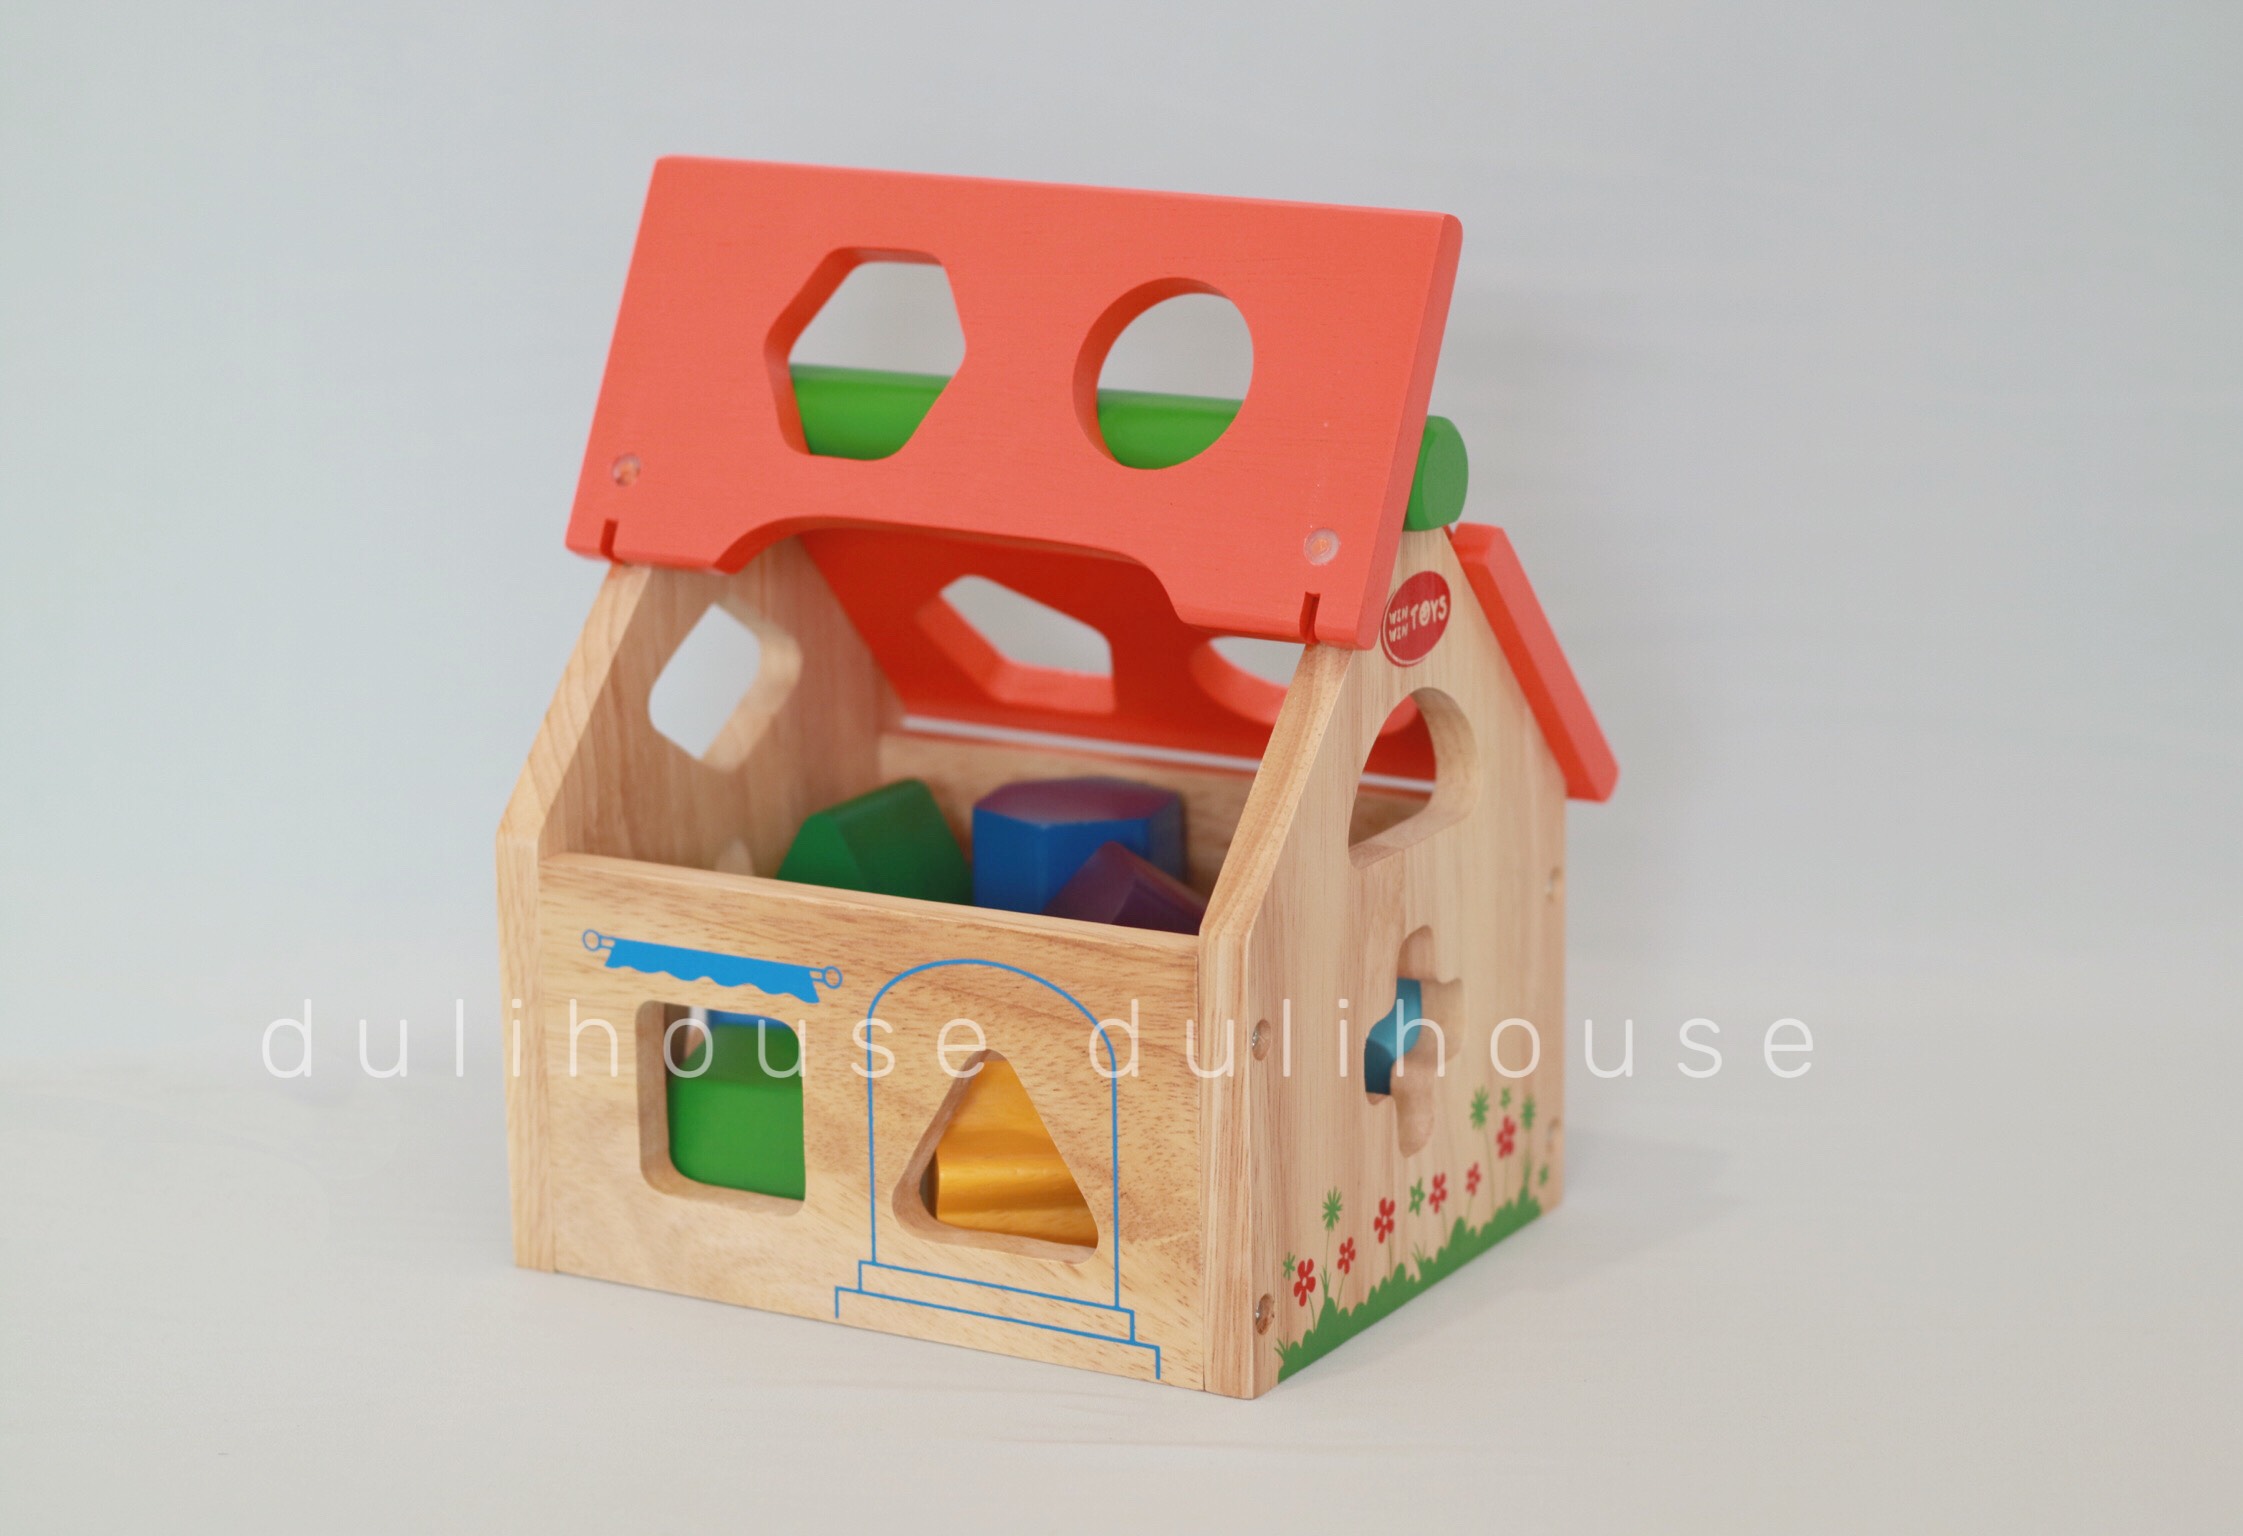 Đồ chơi gỗ cao cấp Ngôi nhà thả hình khối, giúp bé nhận biết cấu tạo ngôi nhà, phân biệt màu sắc & hình khối, rèn luyện đôi bàn tay khéo léo linh hoạt - Sản xuất tại Việt Nam